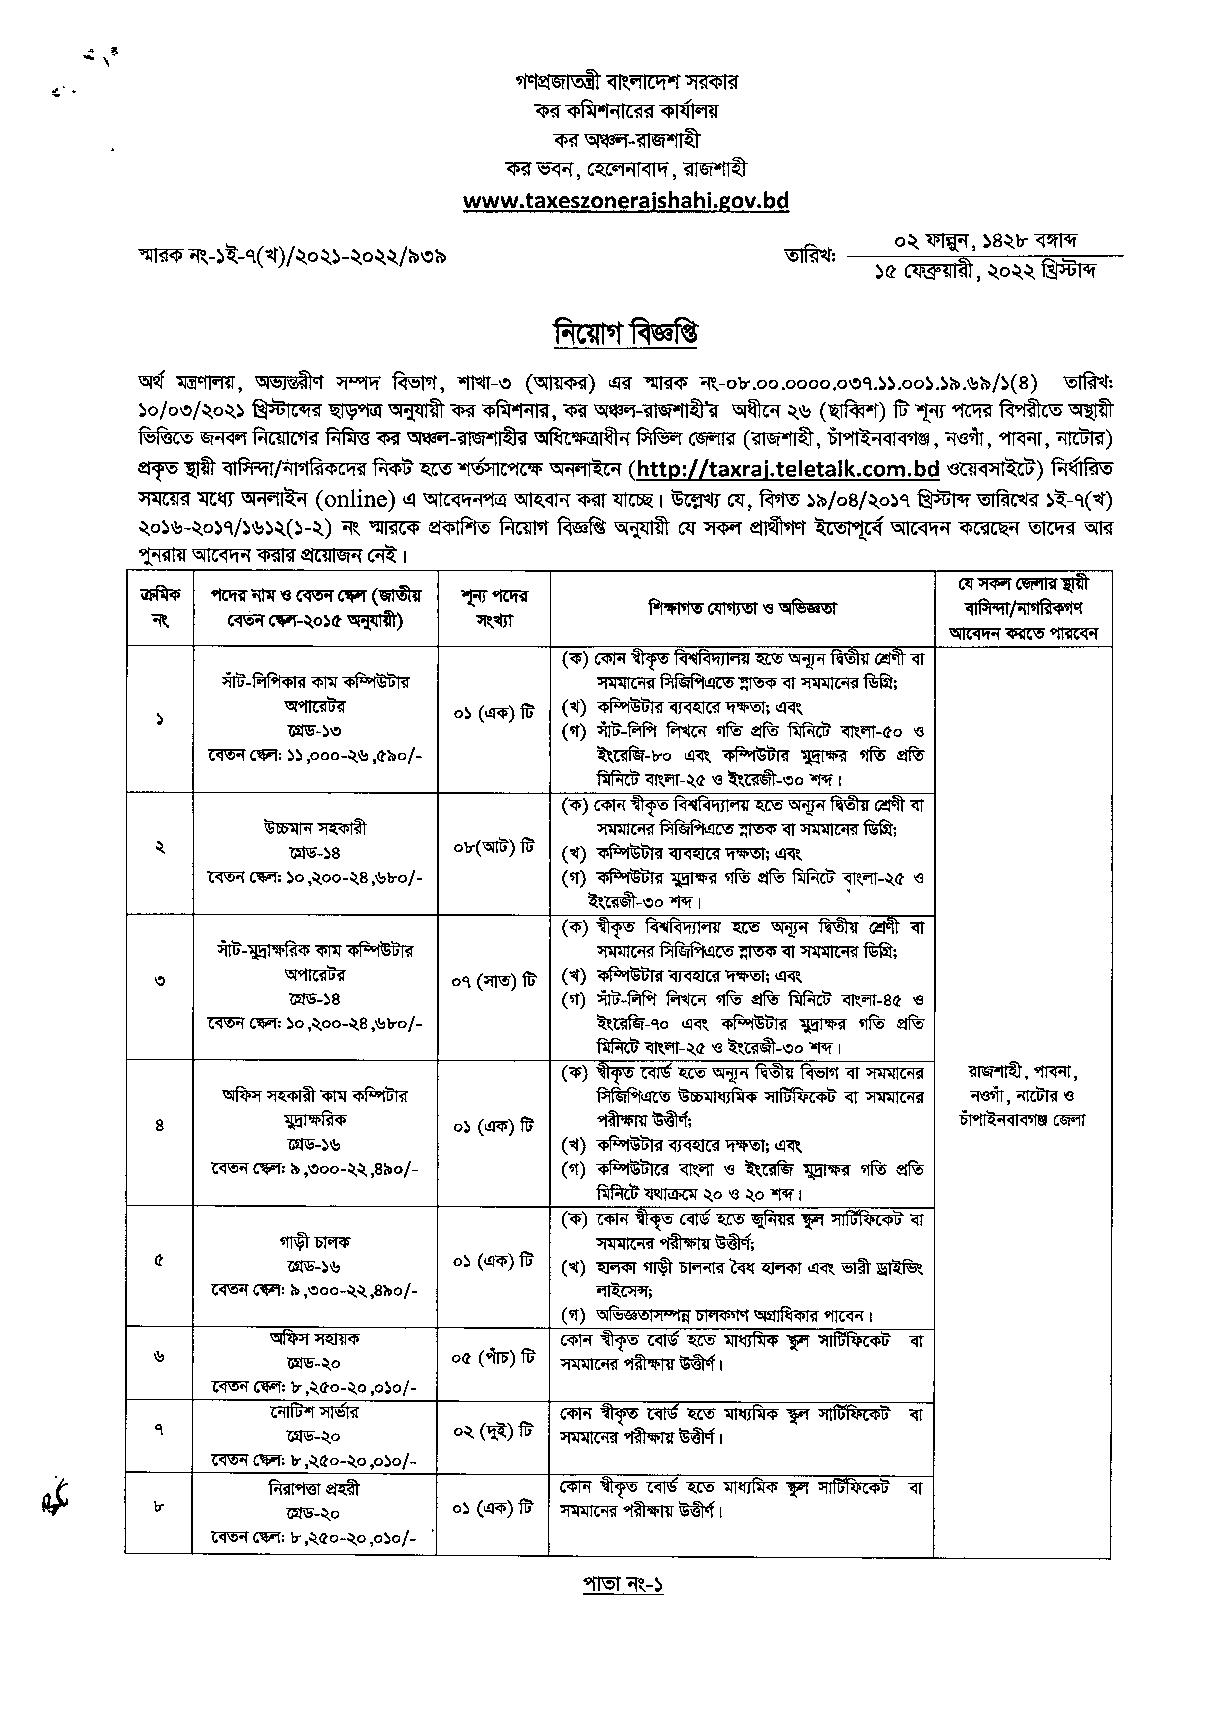 রাজশাহী কর কমিশনার কার্যালয়ের চাকরির সার্কুলার ২০২২ ।   কর কমিশনারের কার্যালয় রাজশাহী নিয়োগ বিজ্ঞপ্তি ২০২২.  Rajshahi Tax Commissioner Office job circular 2022.